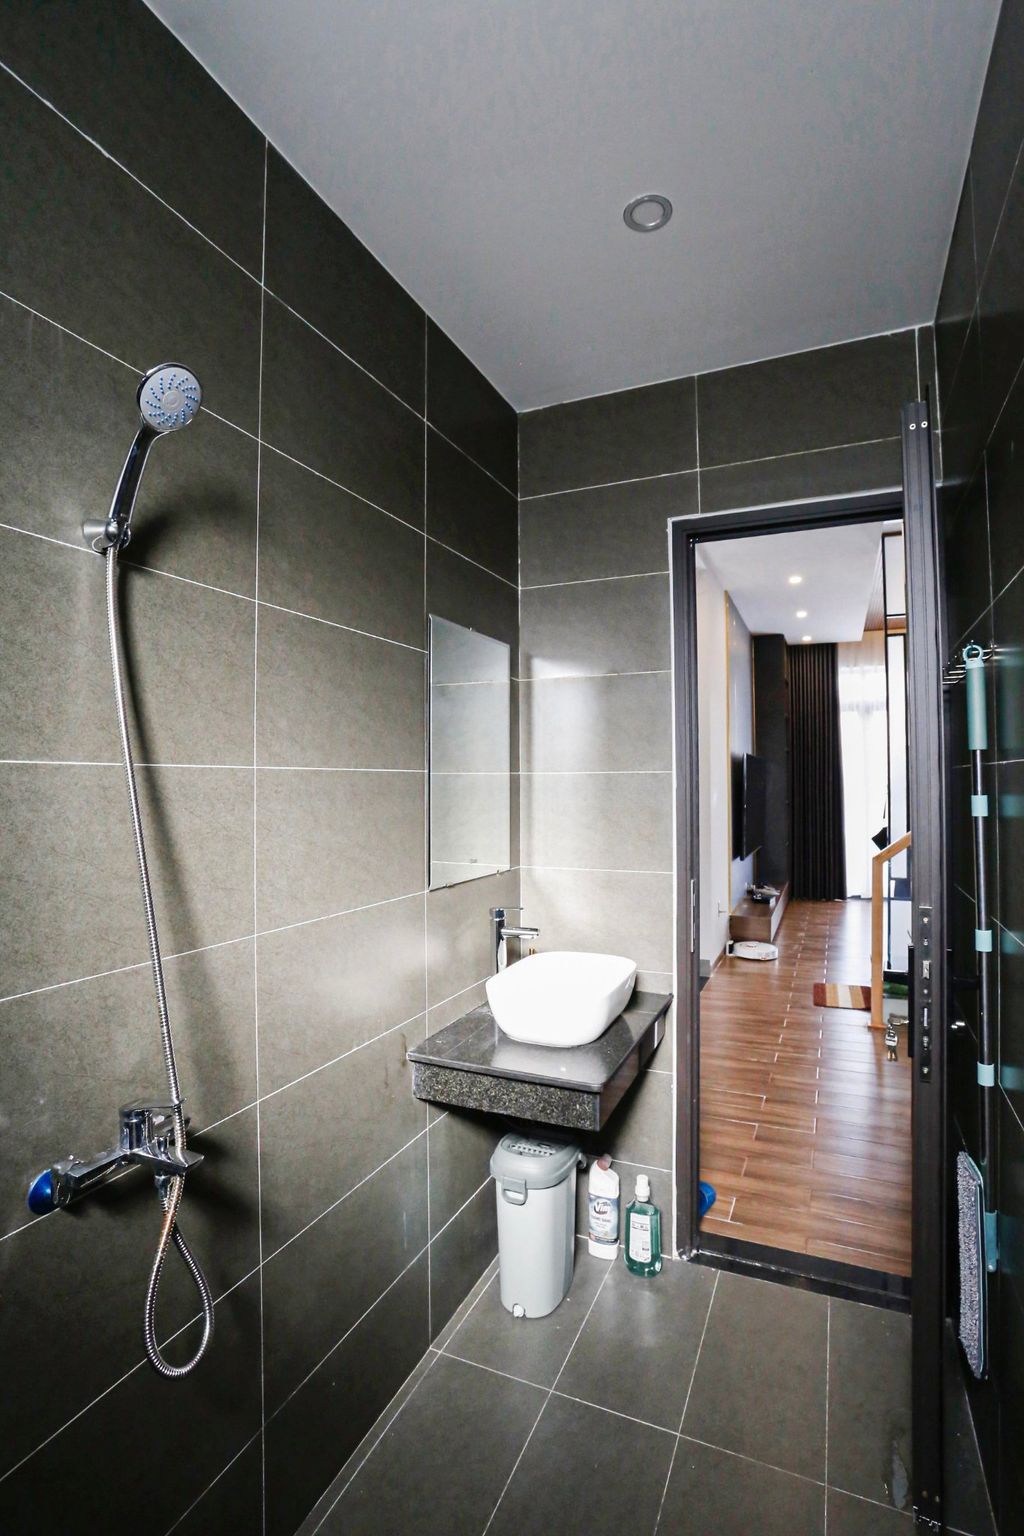 Phòng tắm - Nhà phố 80m2 xây kiểu Hiện đại, tối ưu không gian với tông màu xám - đen sang trọng  | Space T